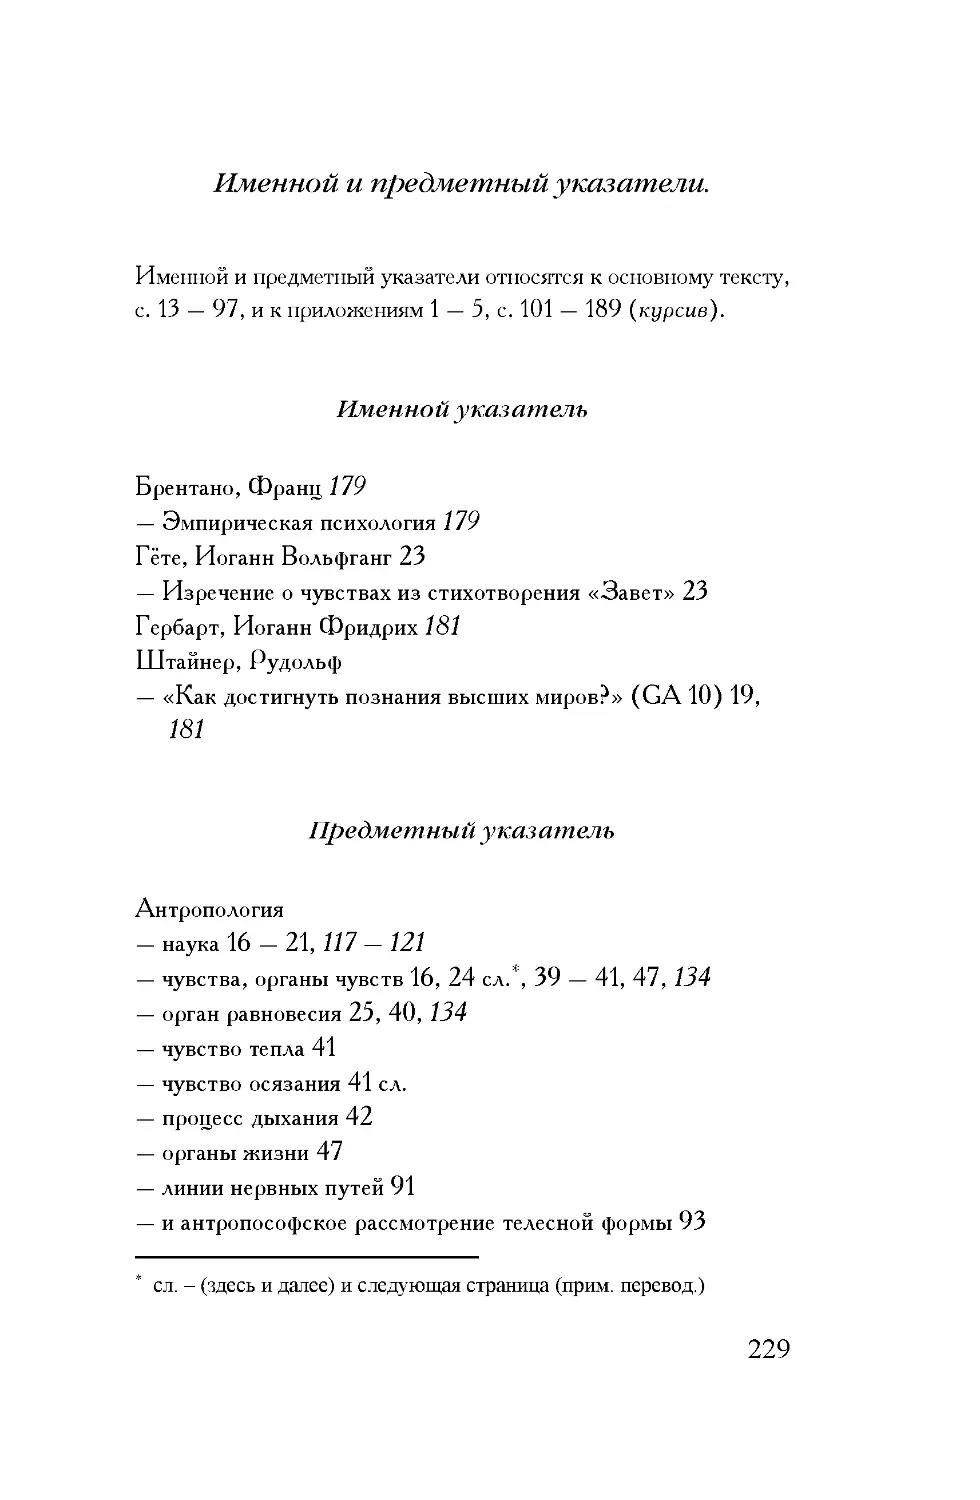 29 ДГ 6 Именной и предметный указатели029.rtf.pdf